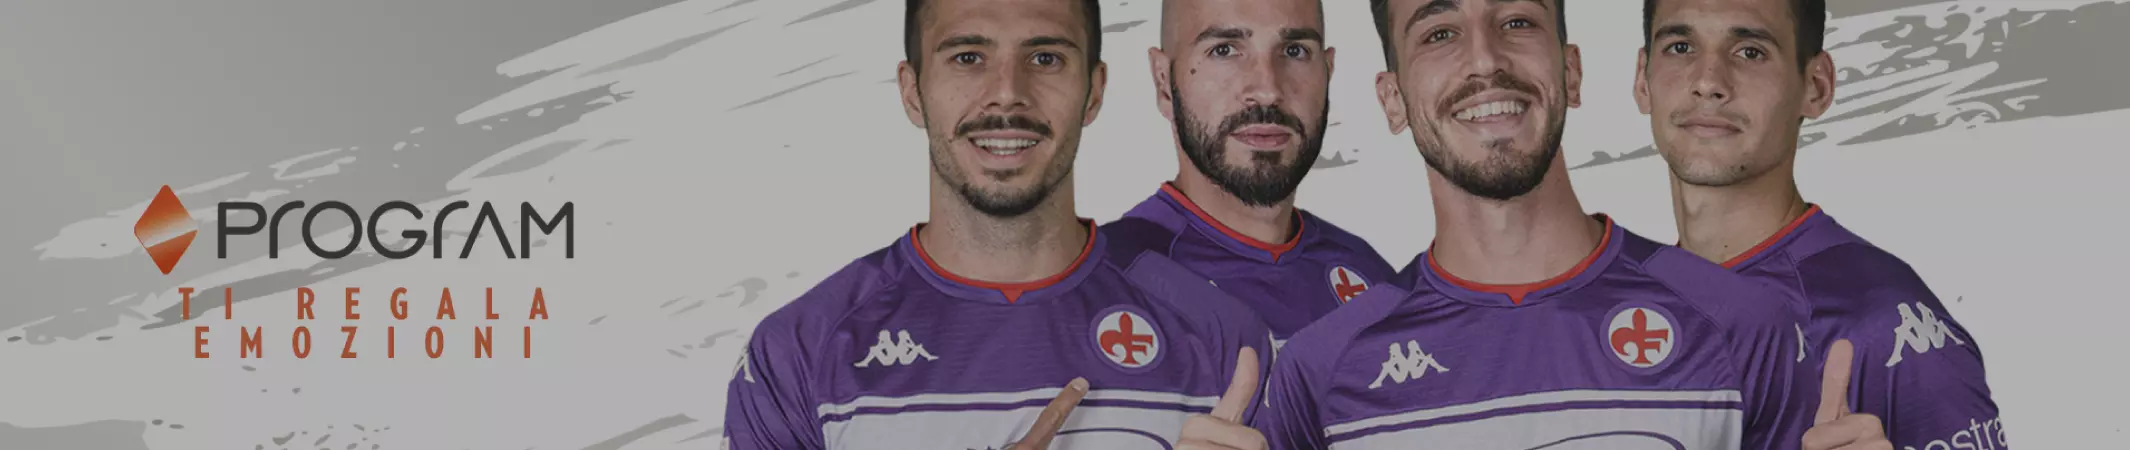 “Program ti regala emozioni” con ACF Fiorentina